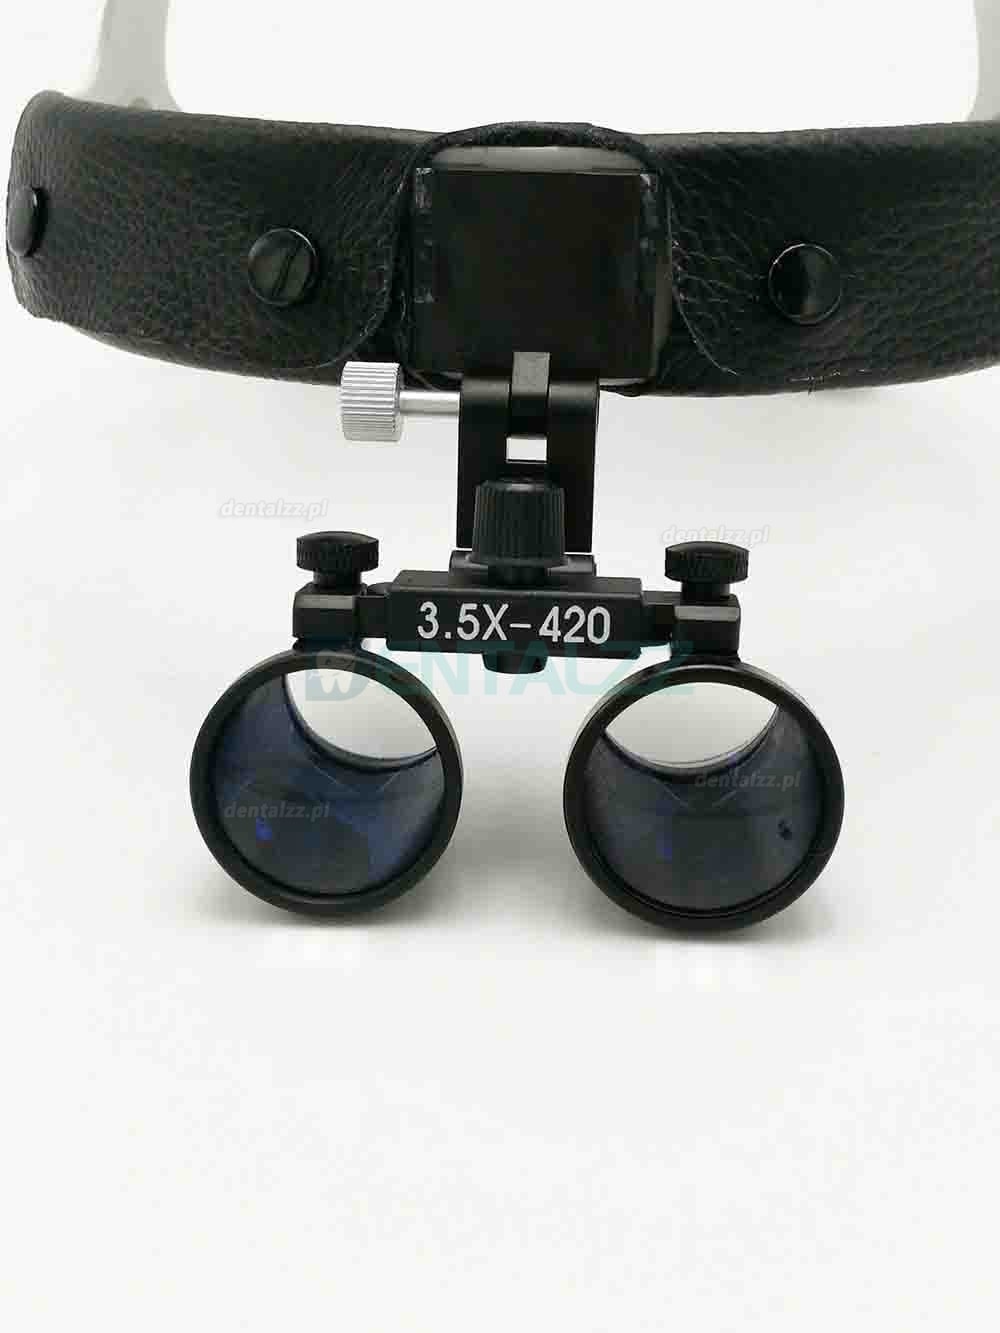 3.5X420mm Stomatologiczno-chirurgiczna lupa okularowa Skórzana Opaska na głowę + Lampa czołowa LED